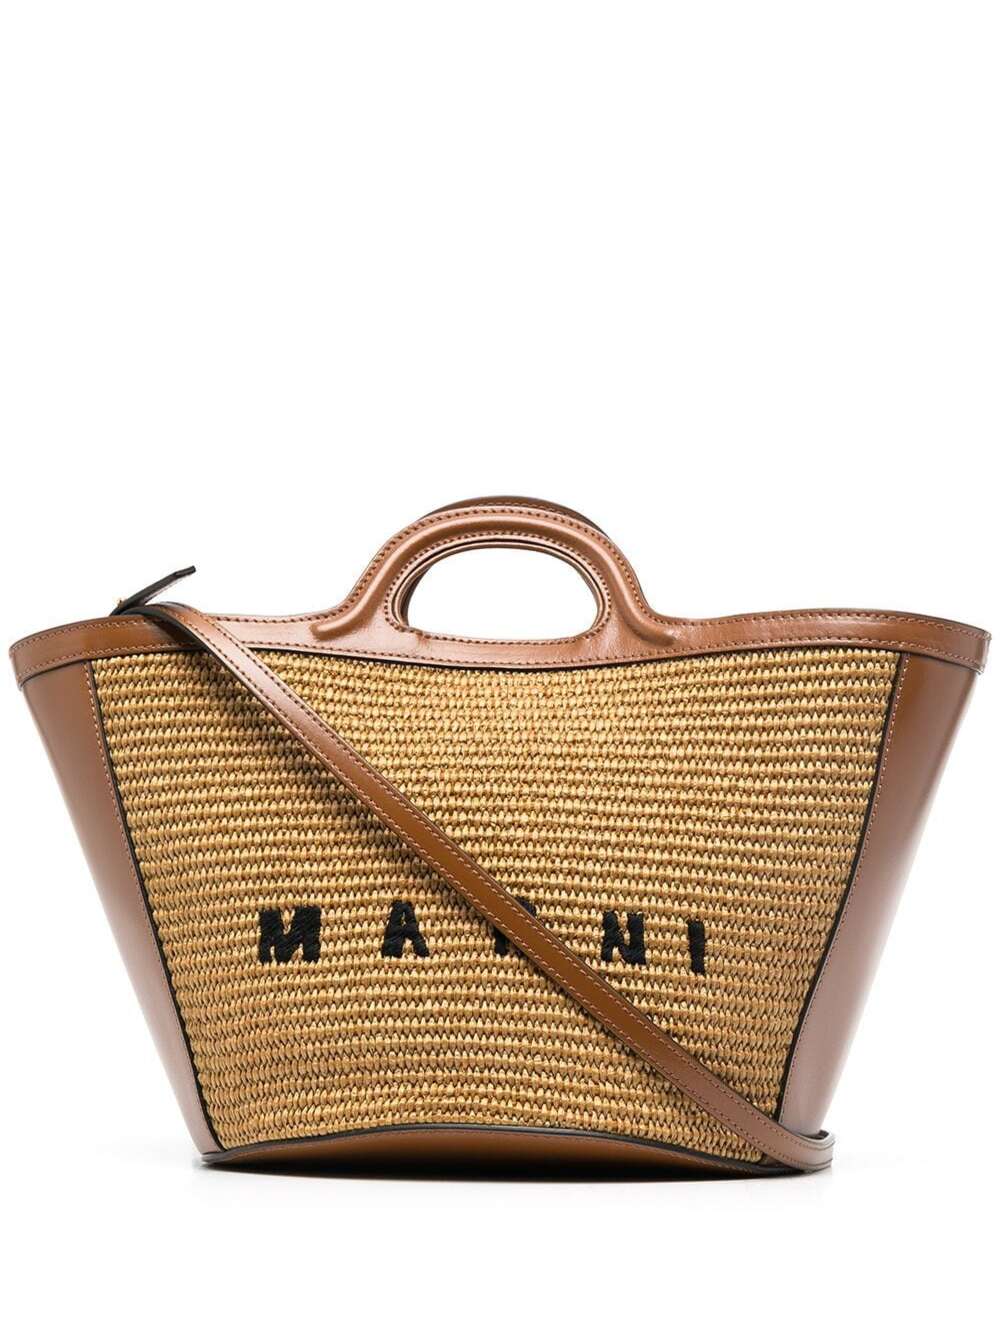 Marni Small Tropicalia Handbag